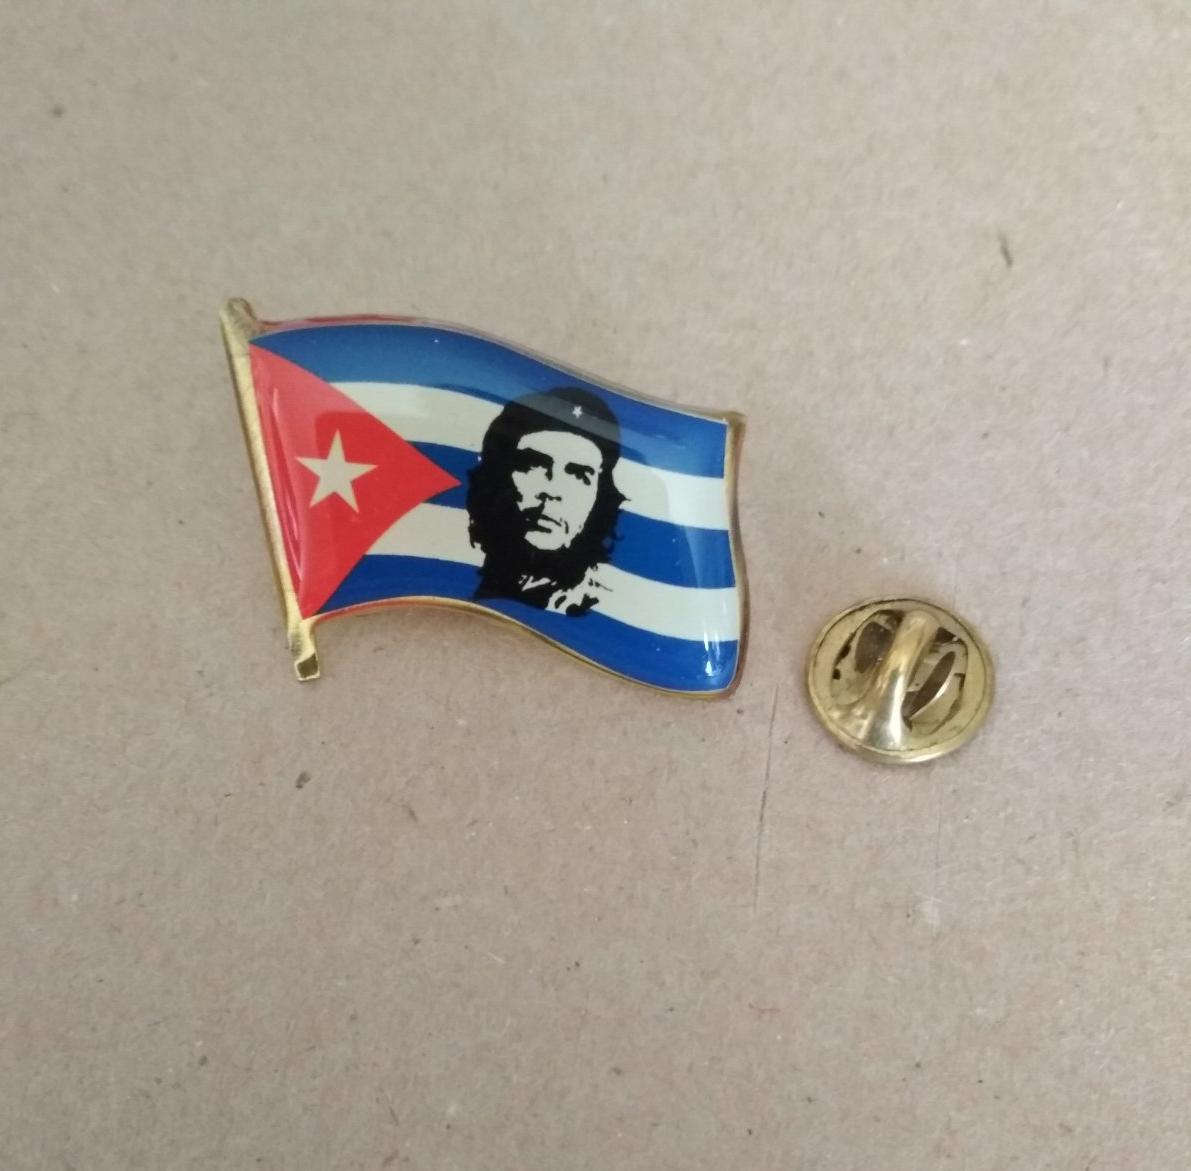 Значок "Че". Портрет на фоне флага Кубы